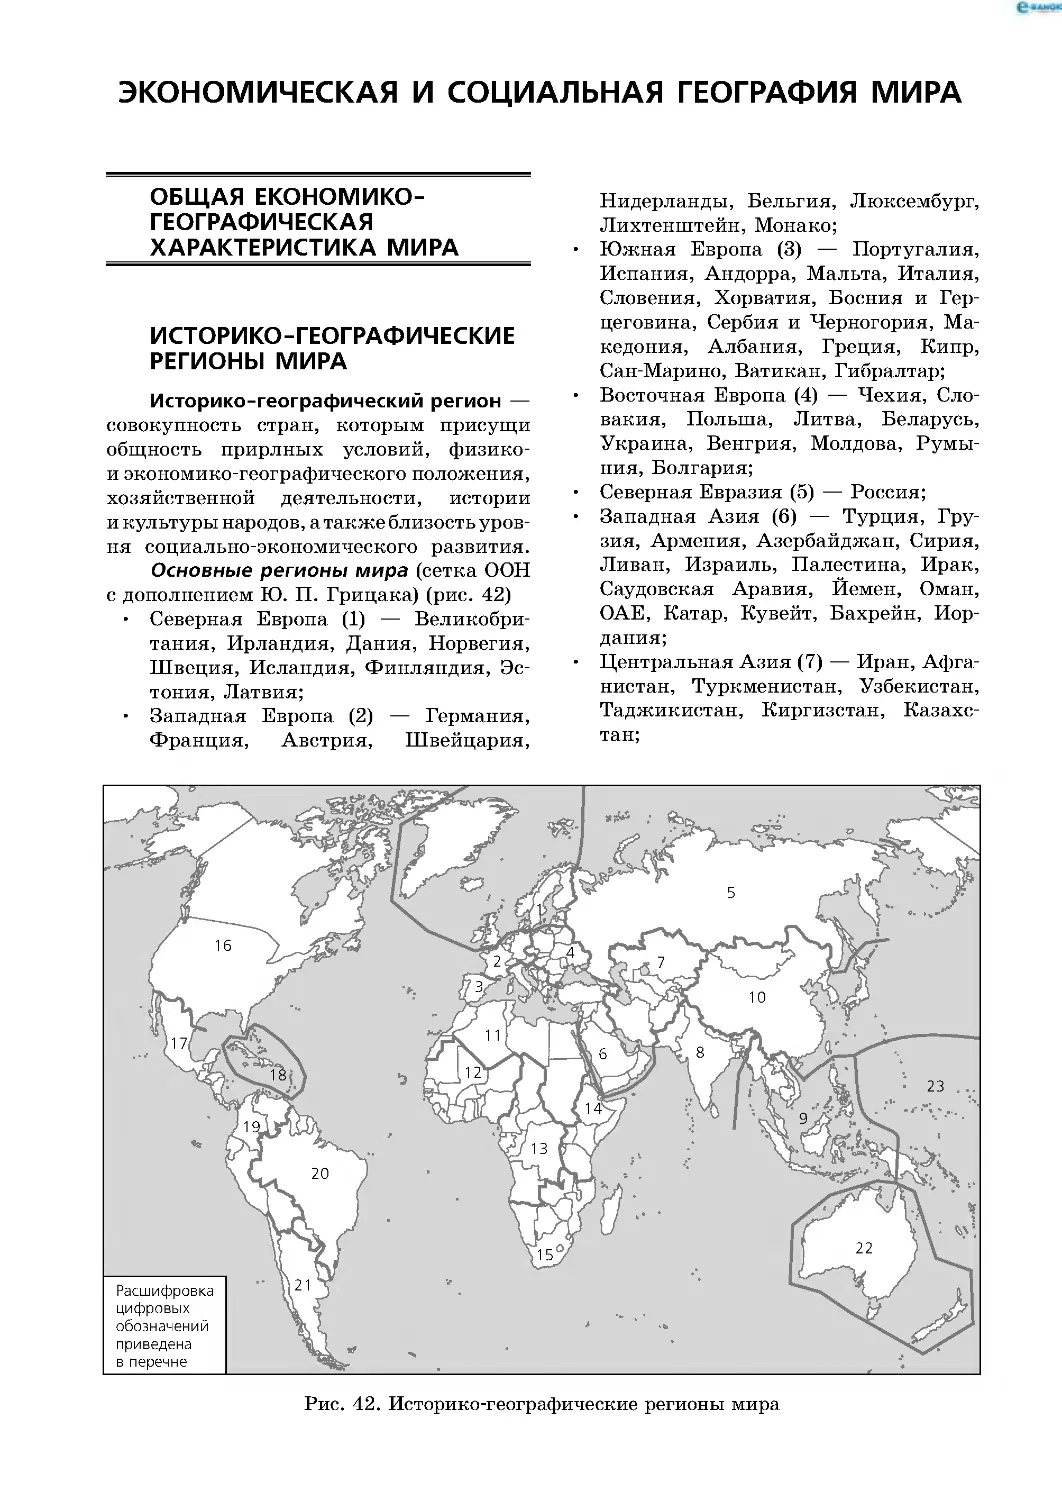 Экономическая и социальная
география мира
Общая економико-географическая характеристика мира